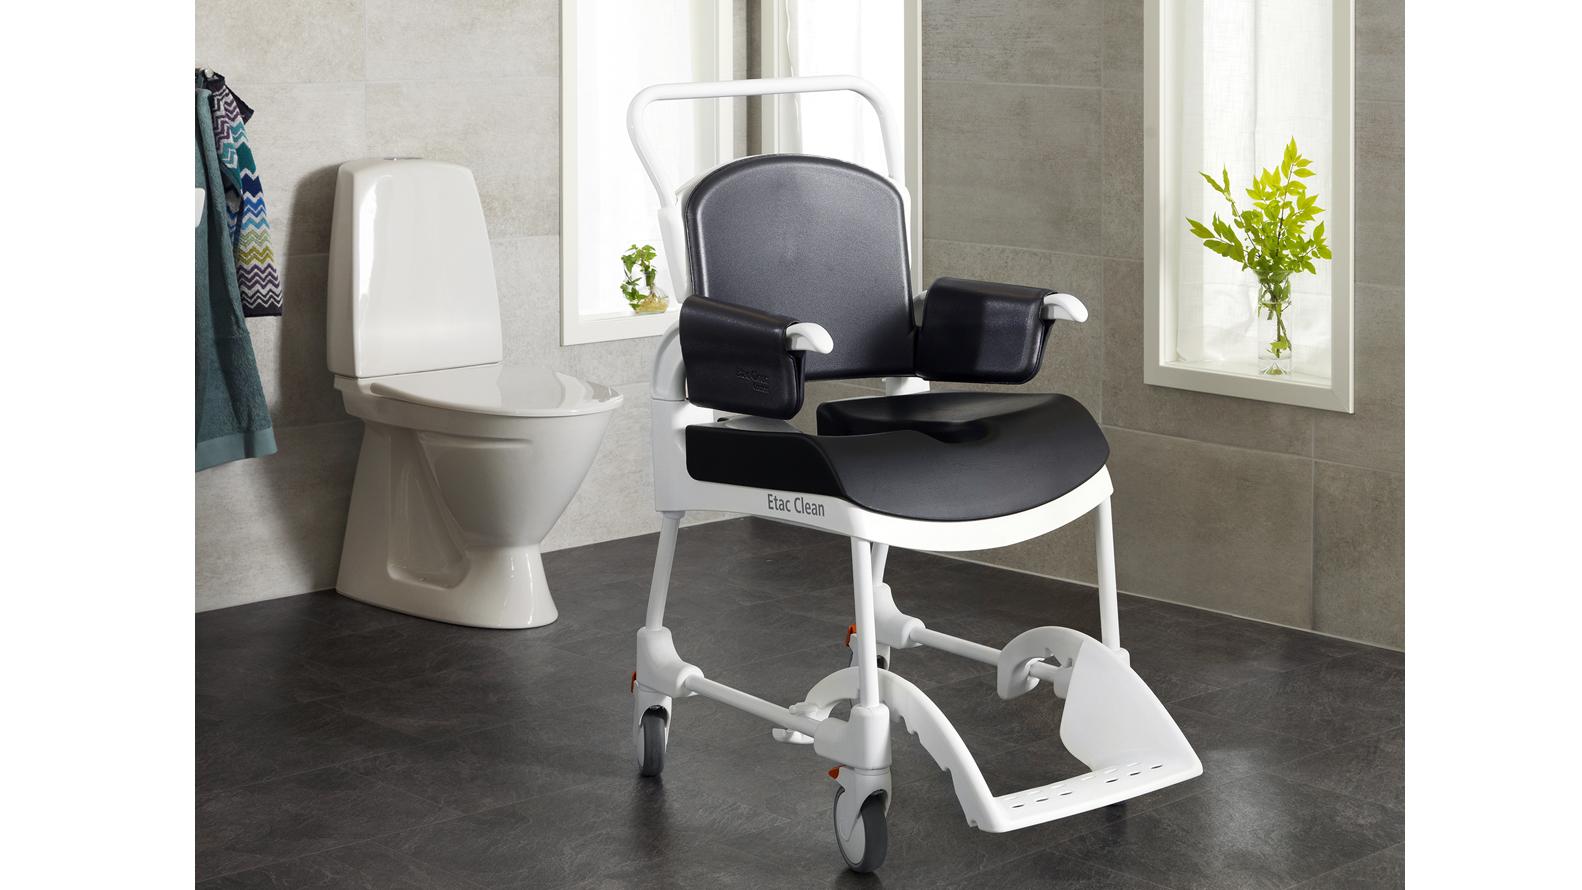 Dusch-Toilettenrollstuhl mit ergonomisch geformter Sitzauflage